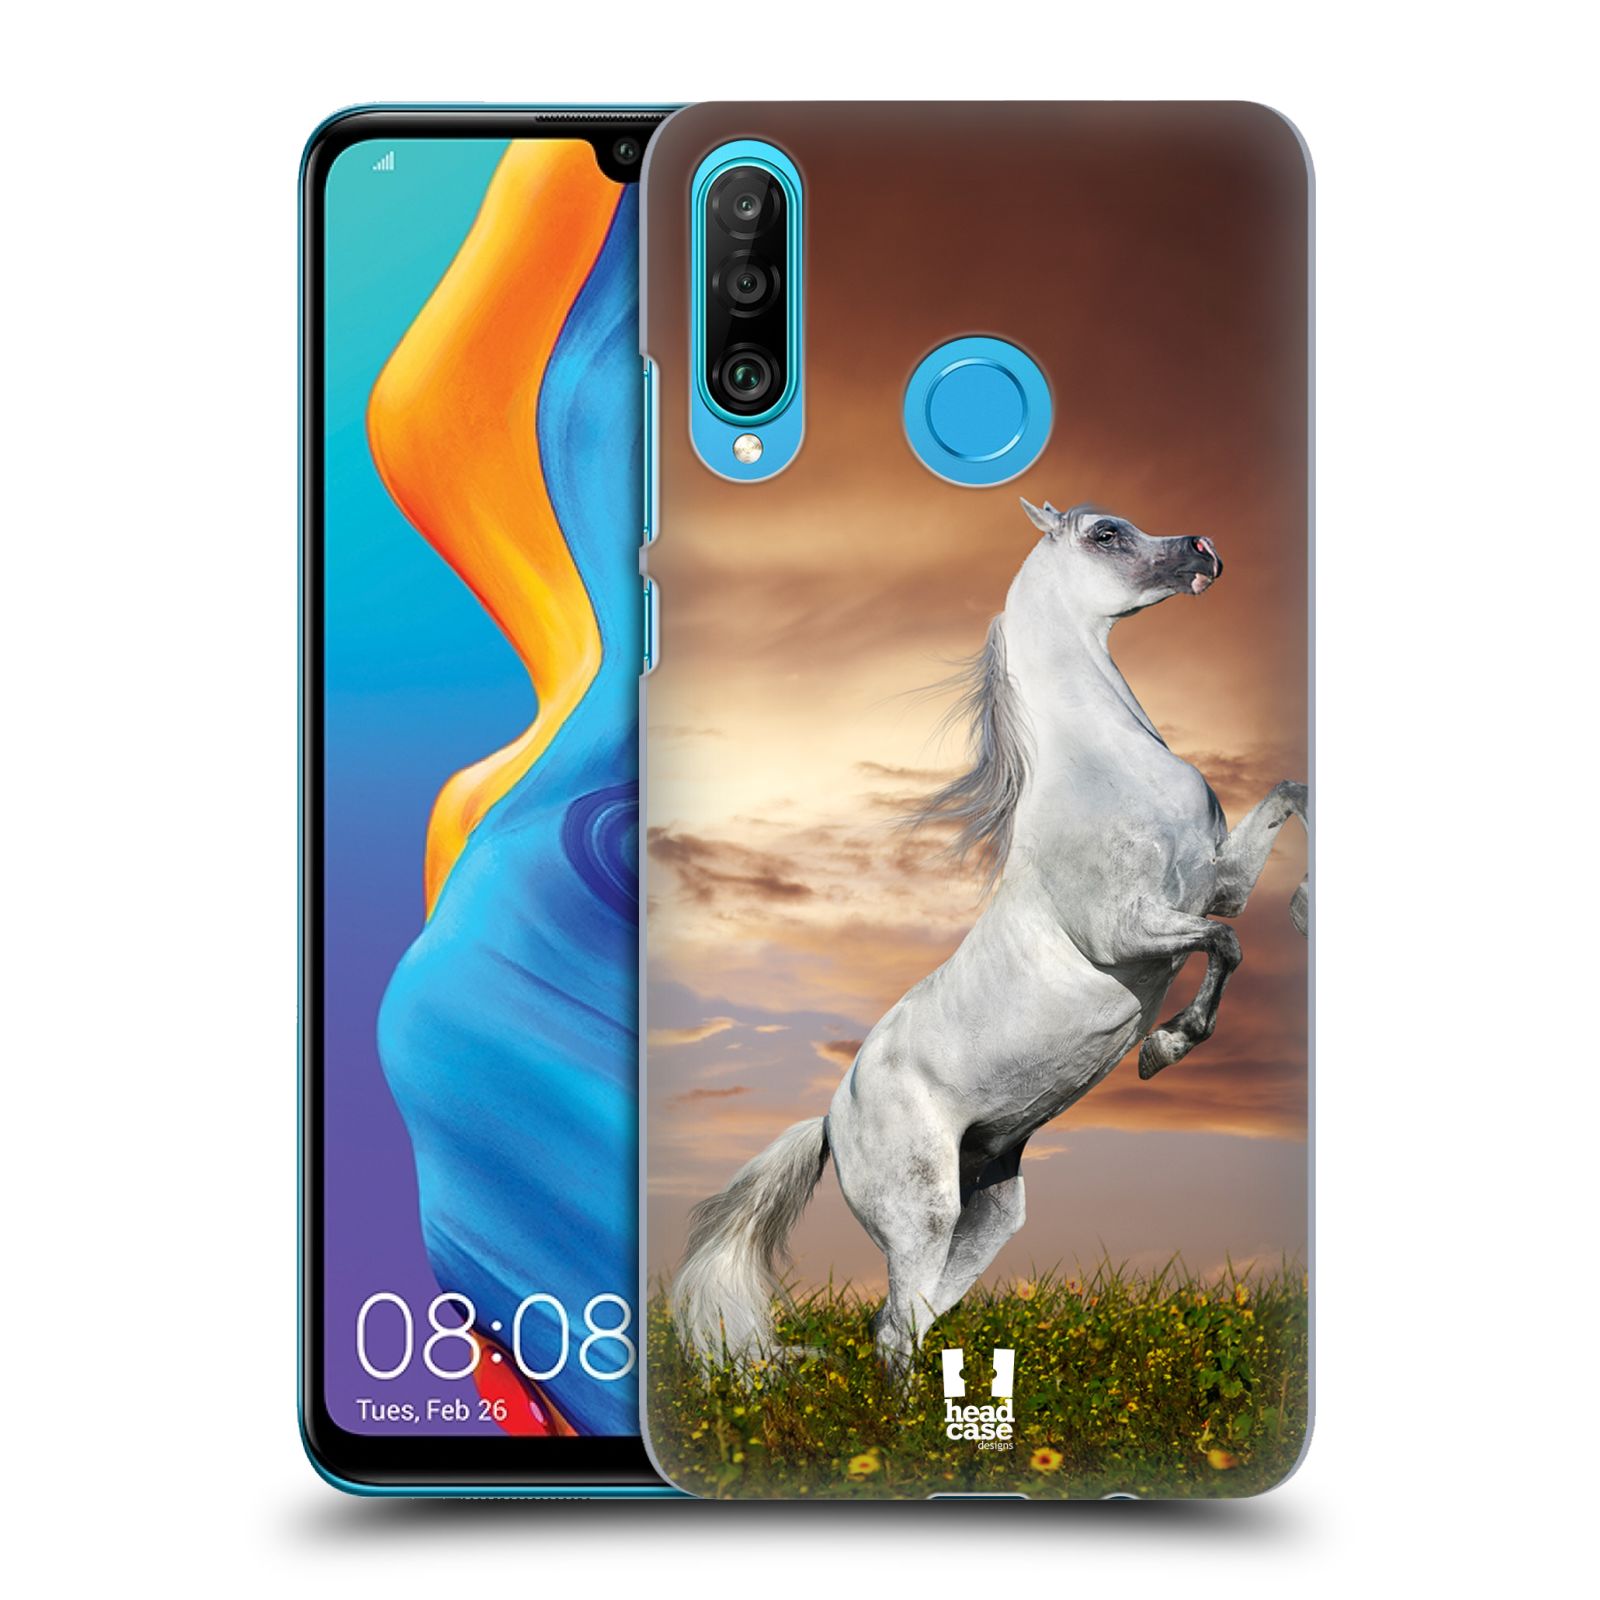 Zadní obal pro mobil Huawei P30 LITE - HEAD CASE - Svět zvířat divoký kůň